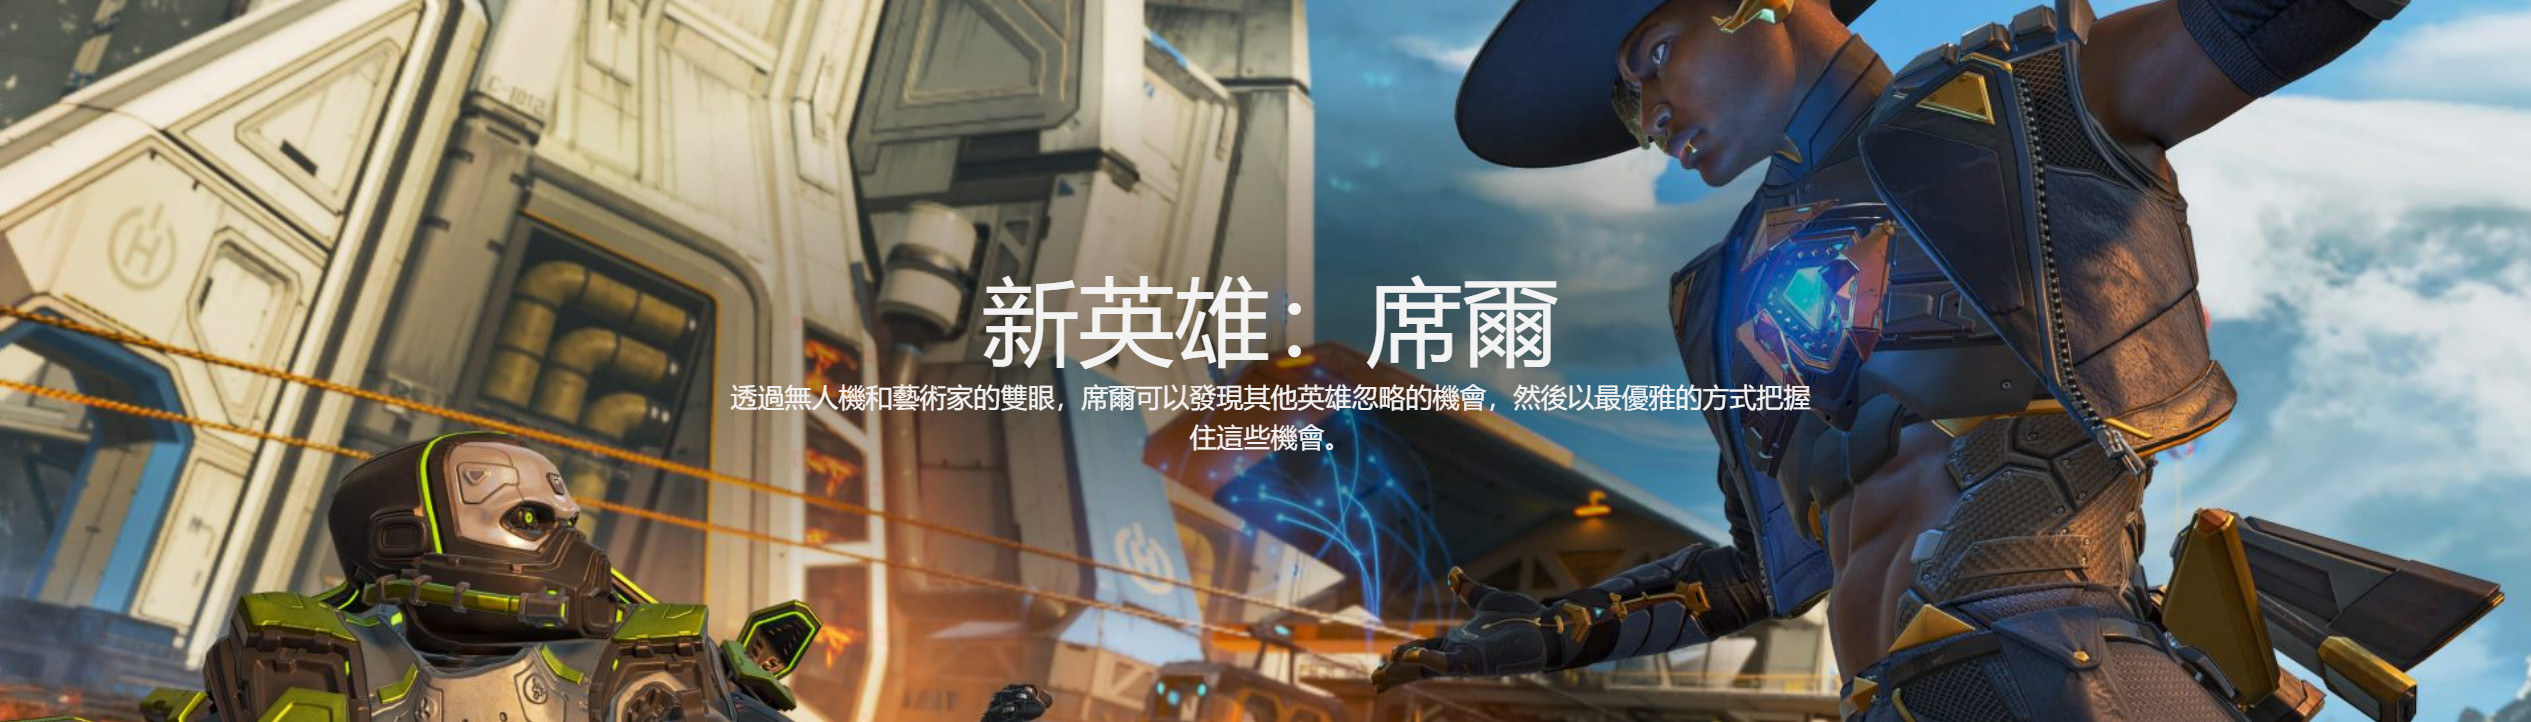 《Apex英雄》第十赛季外域故事“变形记”中文预告 新英雄席尔登场